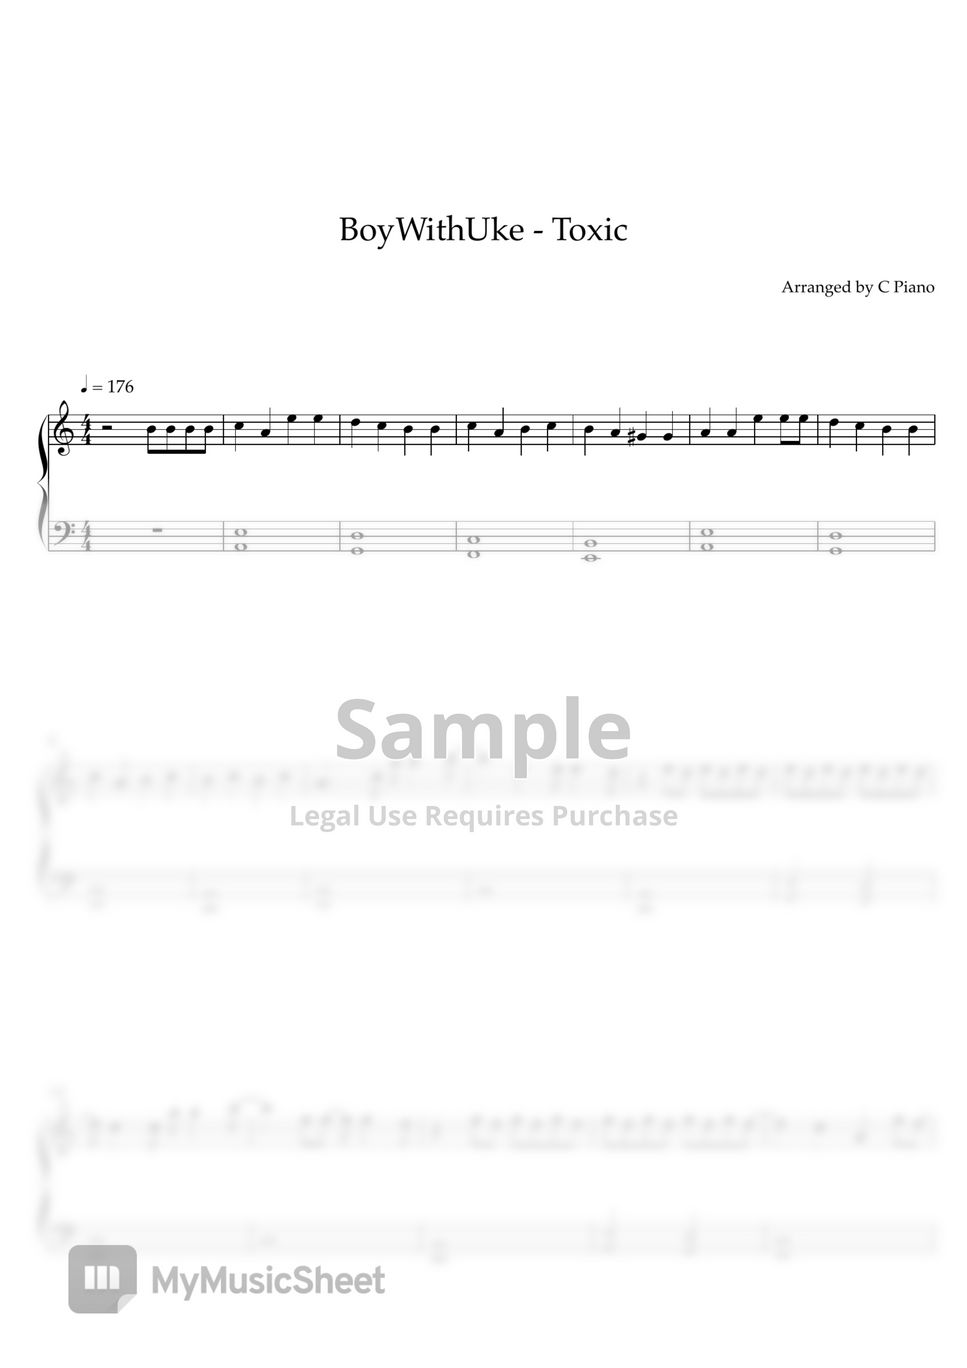 Toxic – BoyWithUke (Full Piano Cover) Sheet music for Piano (Solo)